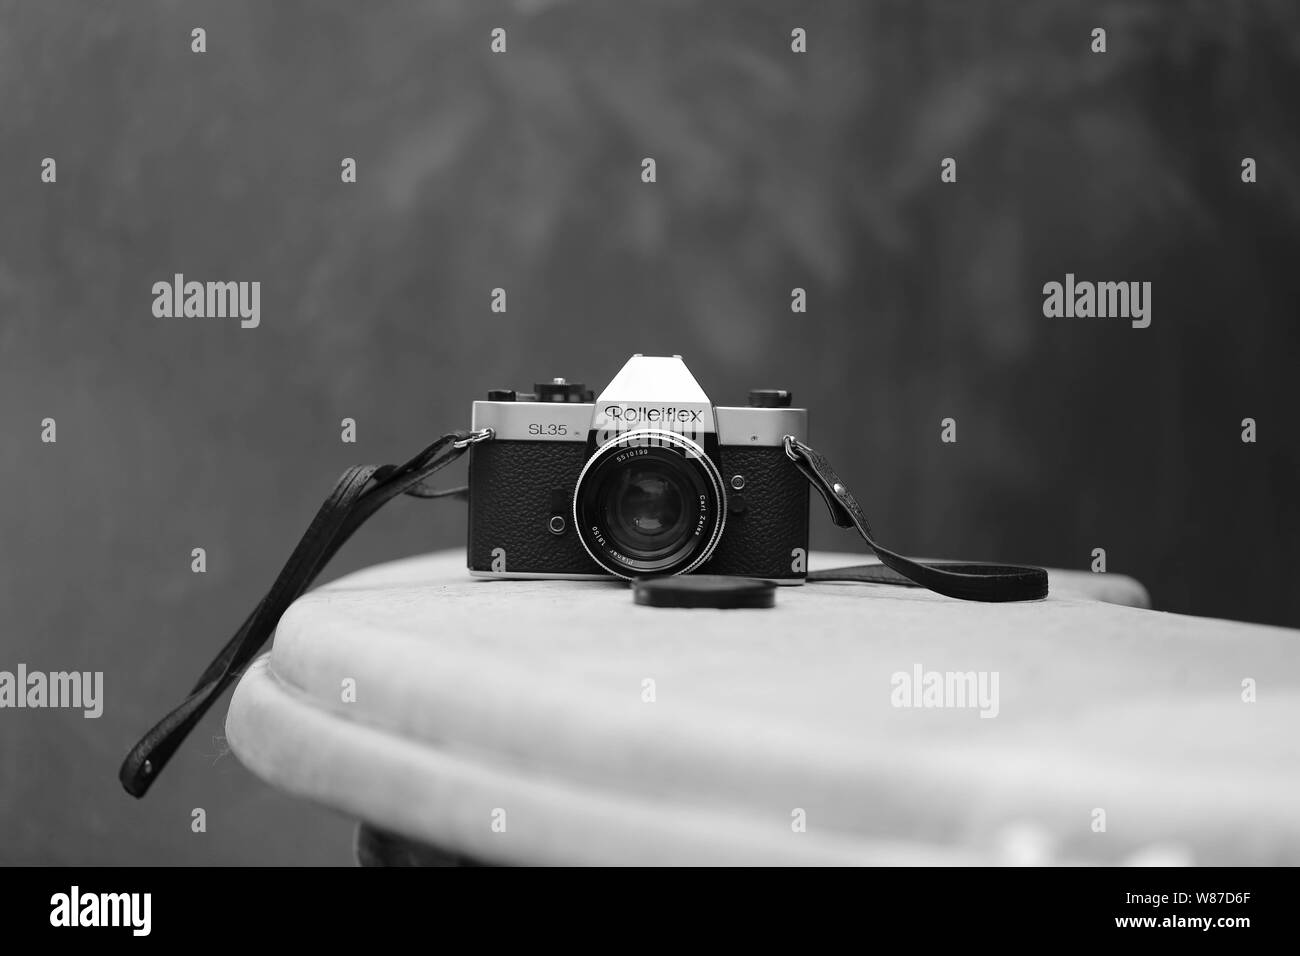 Analoge Kamera Rolleiflex SL35 Carl Zeiss Foto Stock